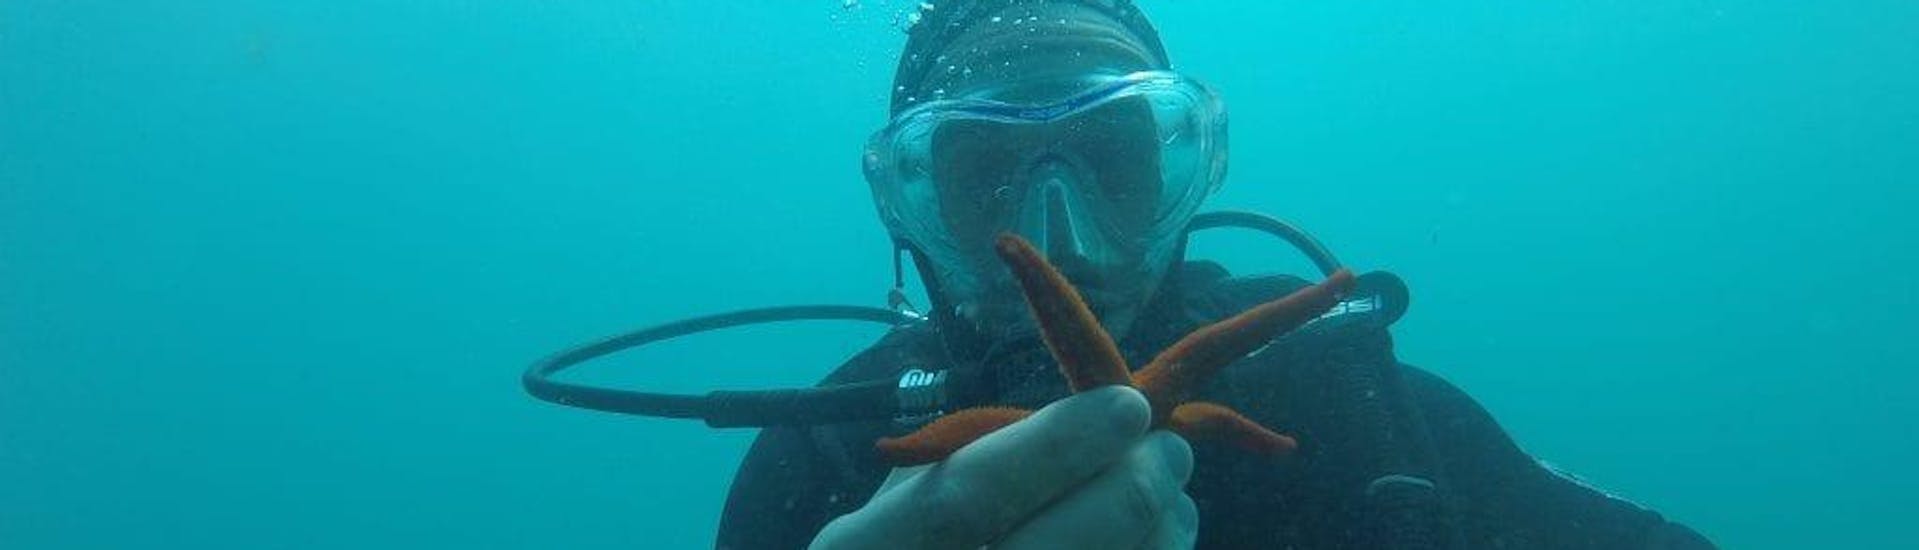 Un plongeur a trouvé une étoile de mer rouge sous l'eau pendant la plongée d'exploration en bateau dans la baie de Saint-Raphaël pour les plongeurs certifiés avec Dive Is Fun.